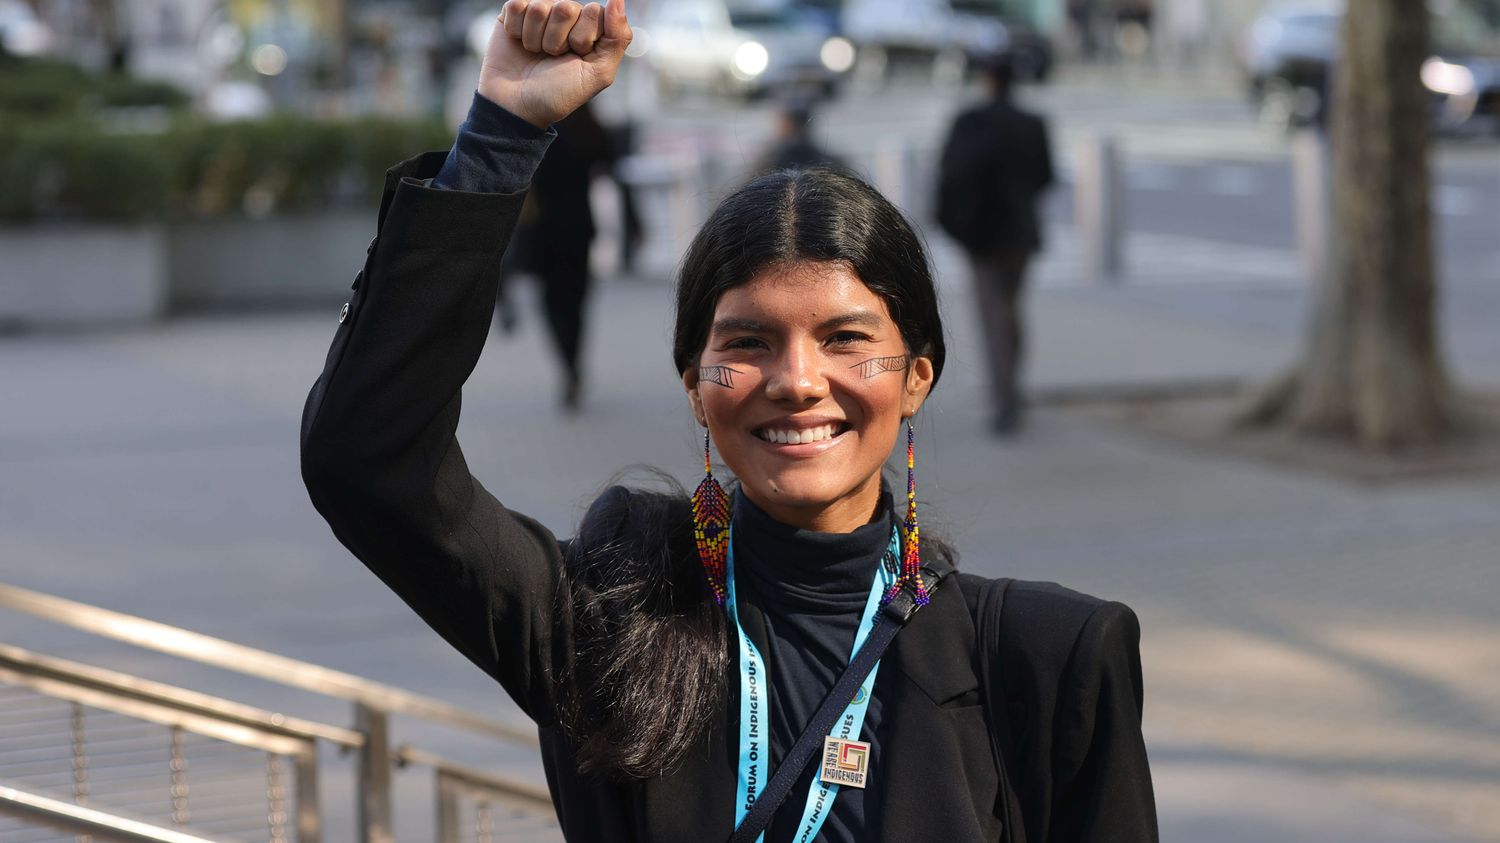 "Si nos terres disparaissent, nous disparaissons avec elles", alerte la mannequin et activiste amazonienne Zaya Guarani